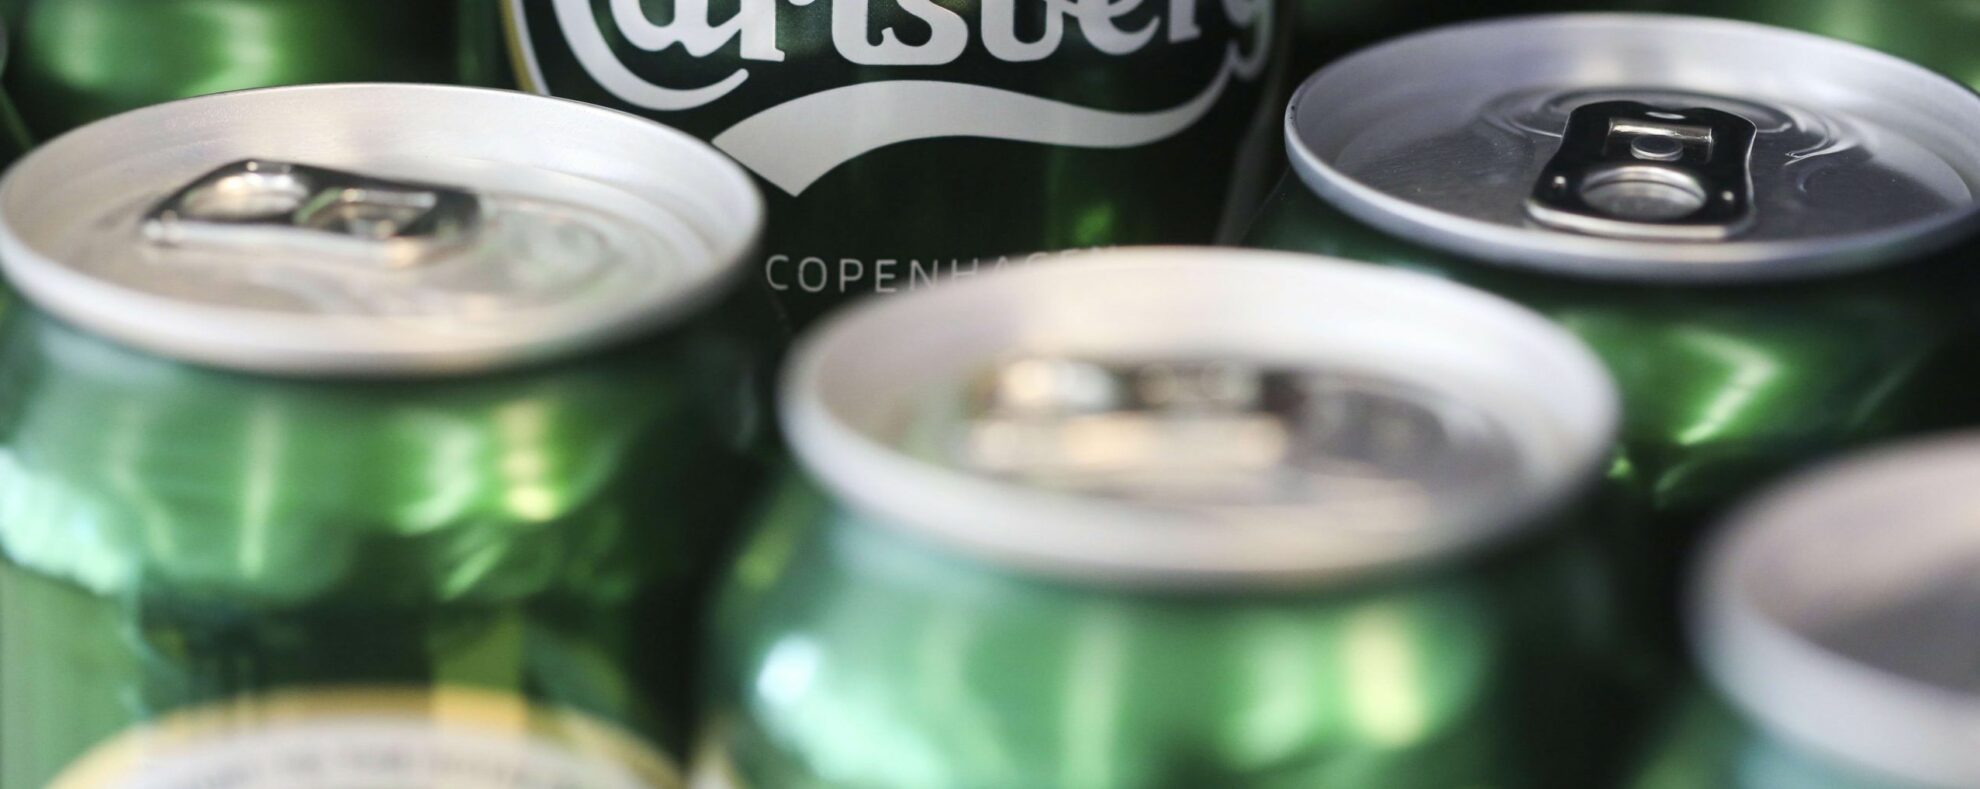 Danijos alaus gamintoja „Carlsberg“ pirmadienį paskelbė, kad dėl karo Ukrainoje visiškai pasitrauks iš Rusijos, vienos iš pagrindinių savo rinkų, kurioje turi 8 400 darbuotojų.